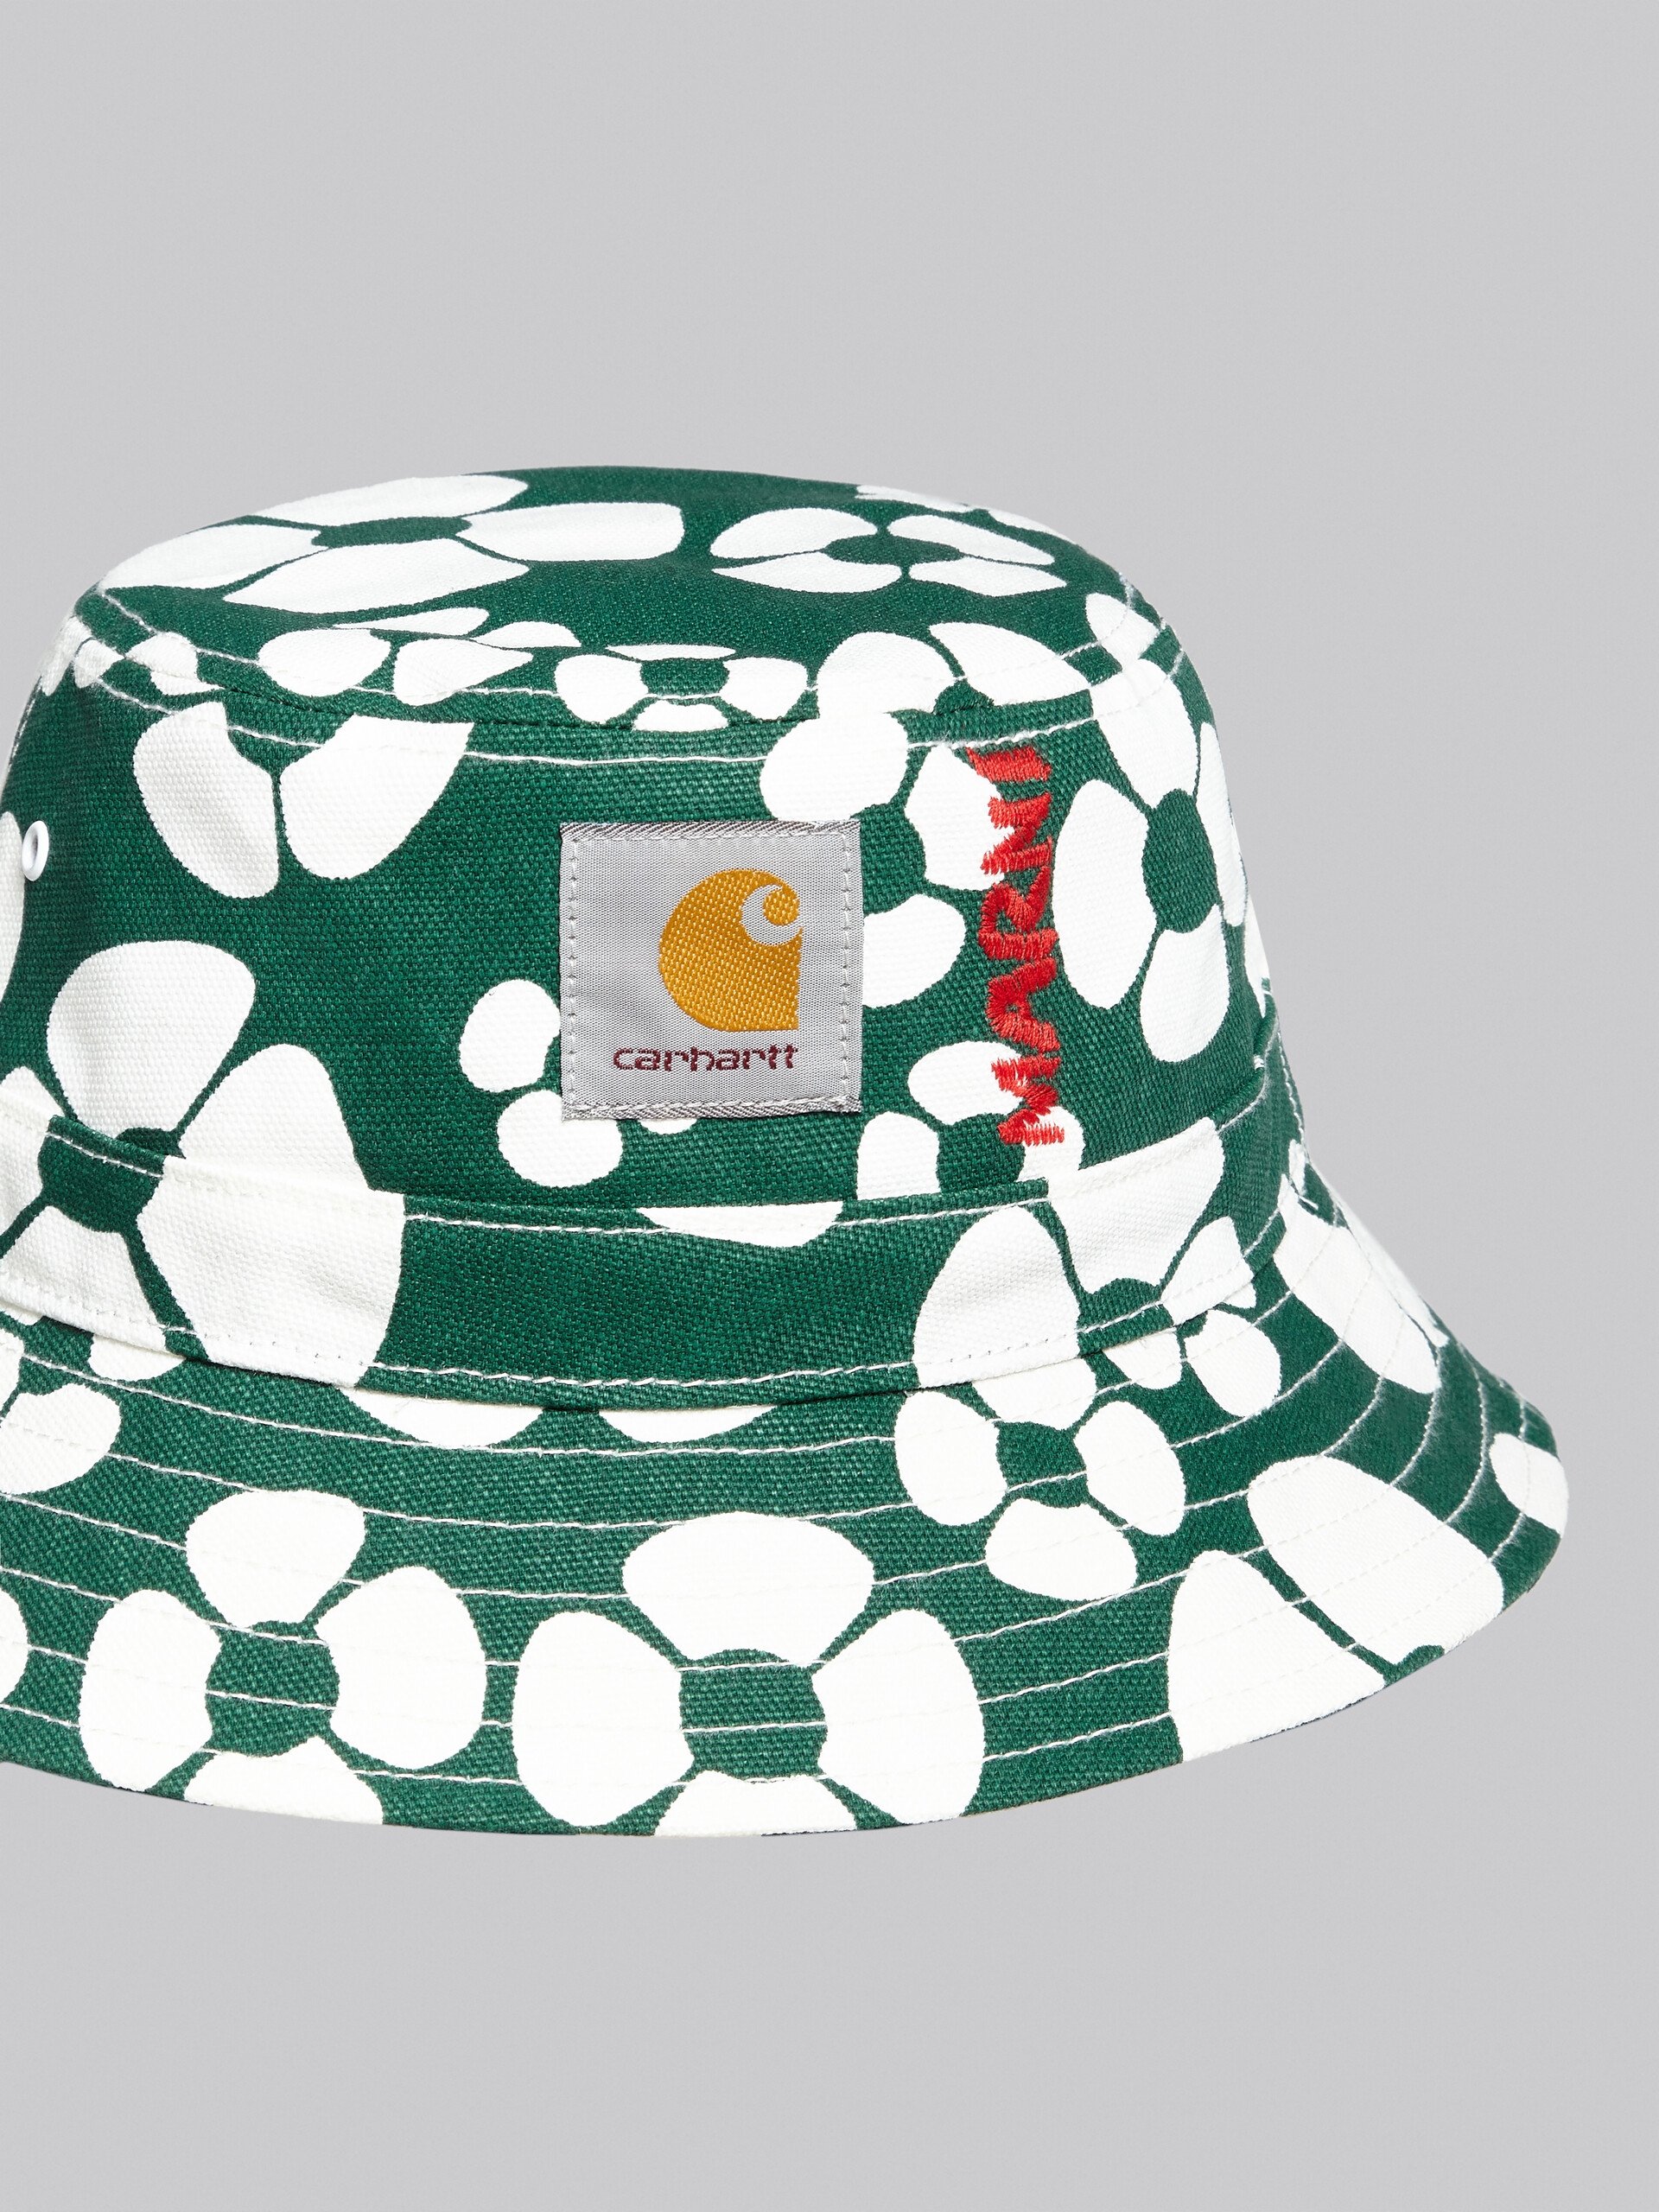 MARNI x CARHARTT WIP - green bucket hat - Hats - Image 4